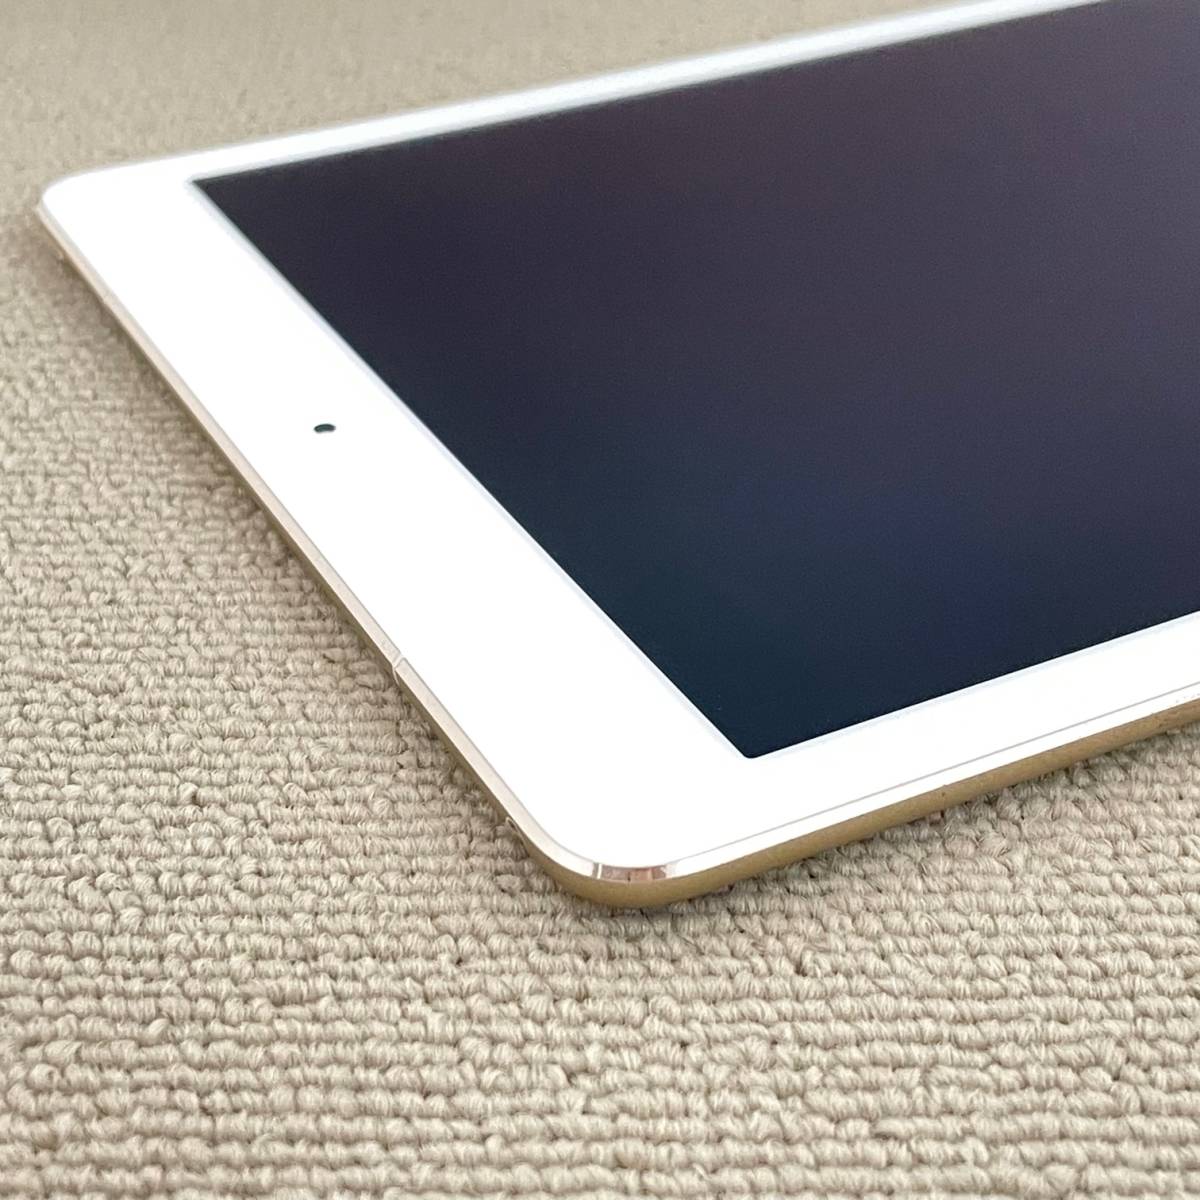 画面割れ ジャンク品扱い iPad Pro 9.7インチ 128GB Wi-Fi+Cellular